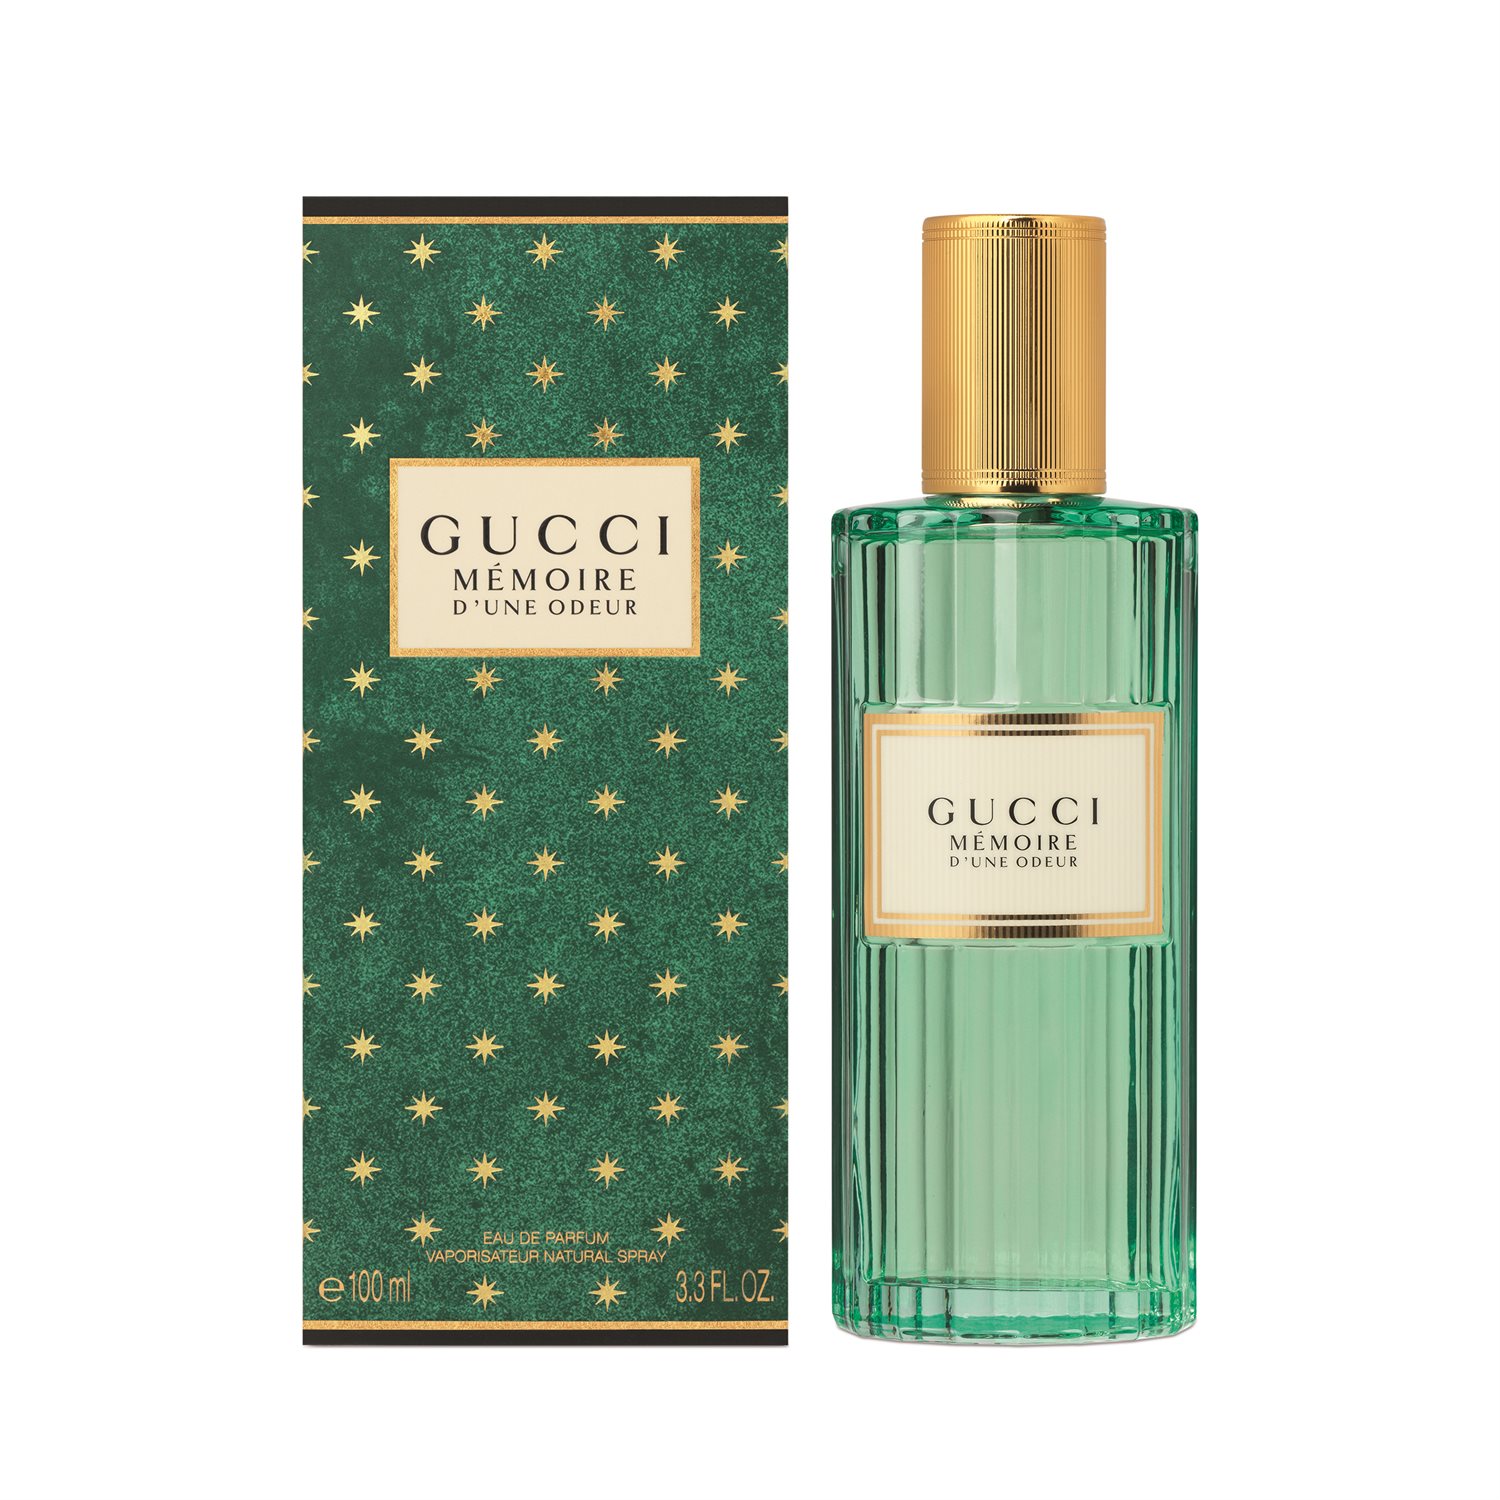 Gucci Mémoire D'une Odeur 100 ml. eau parfum